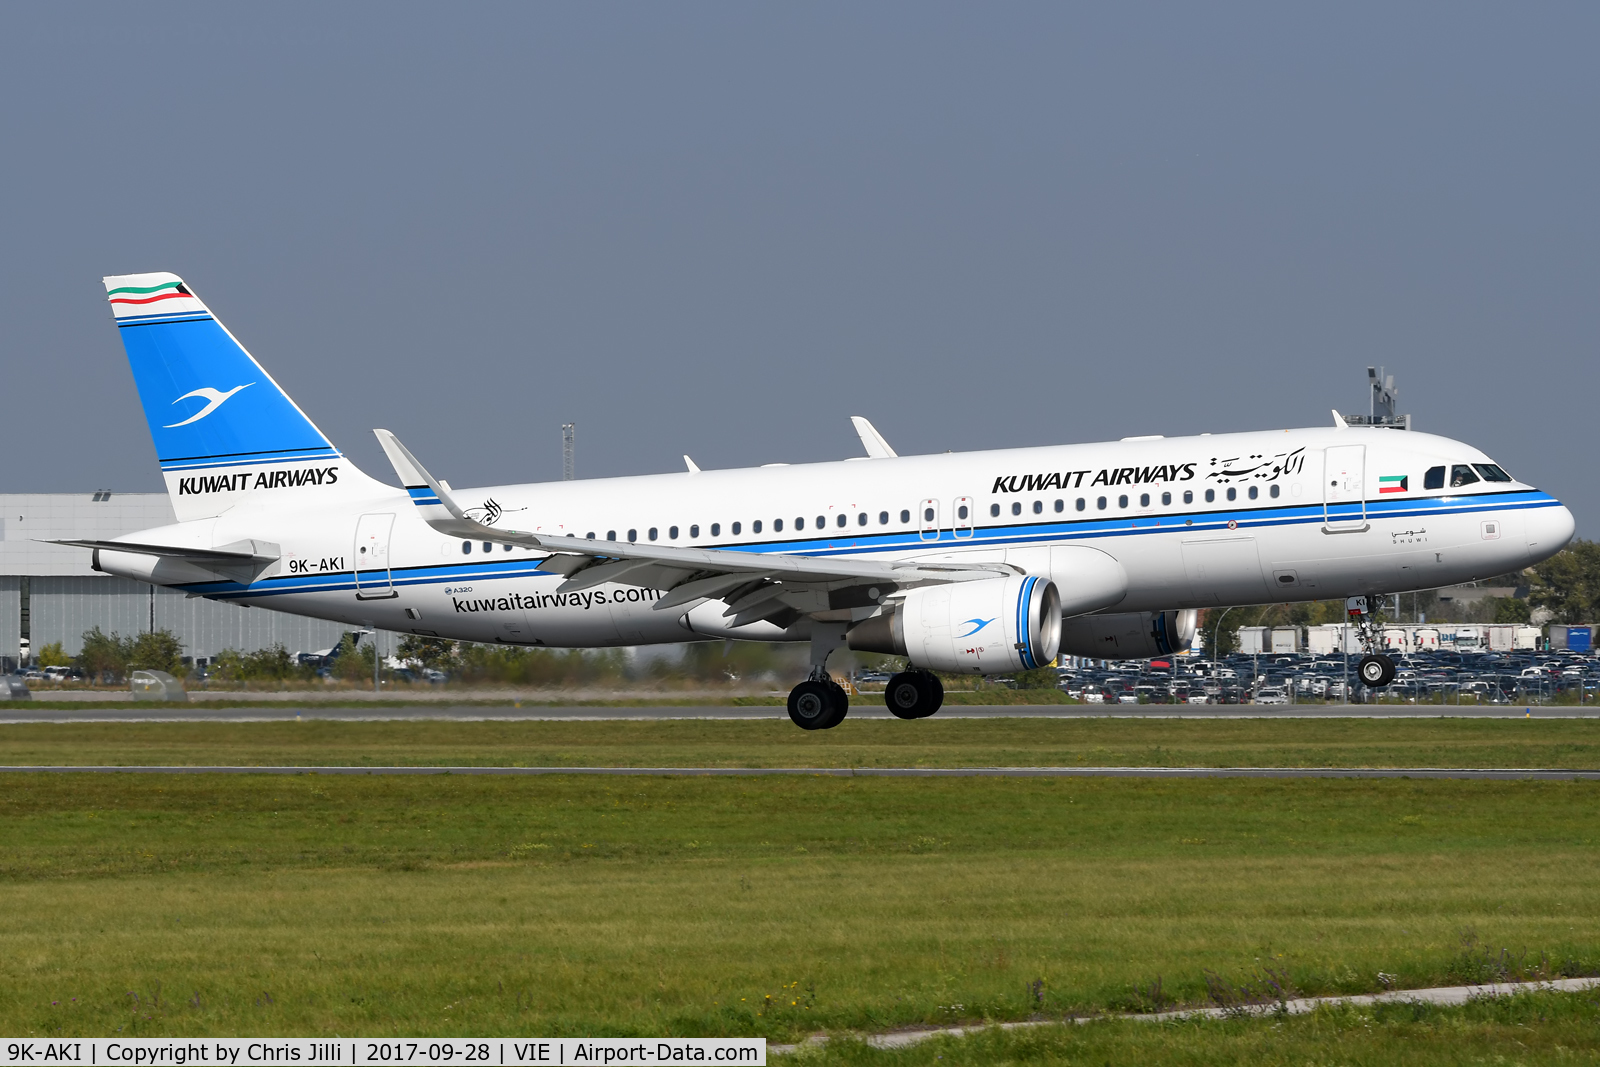 9K-AKI, 2015 Airbus A320-214 C/N 6500, Kuwait Airways